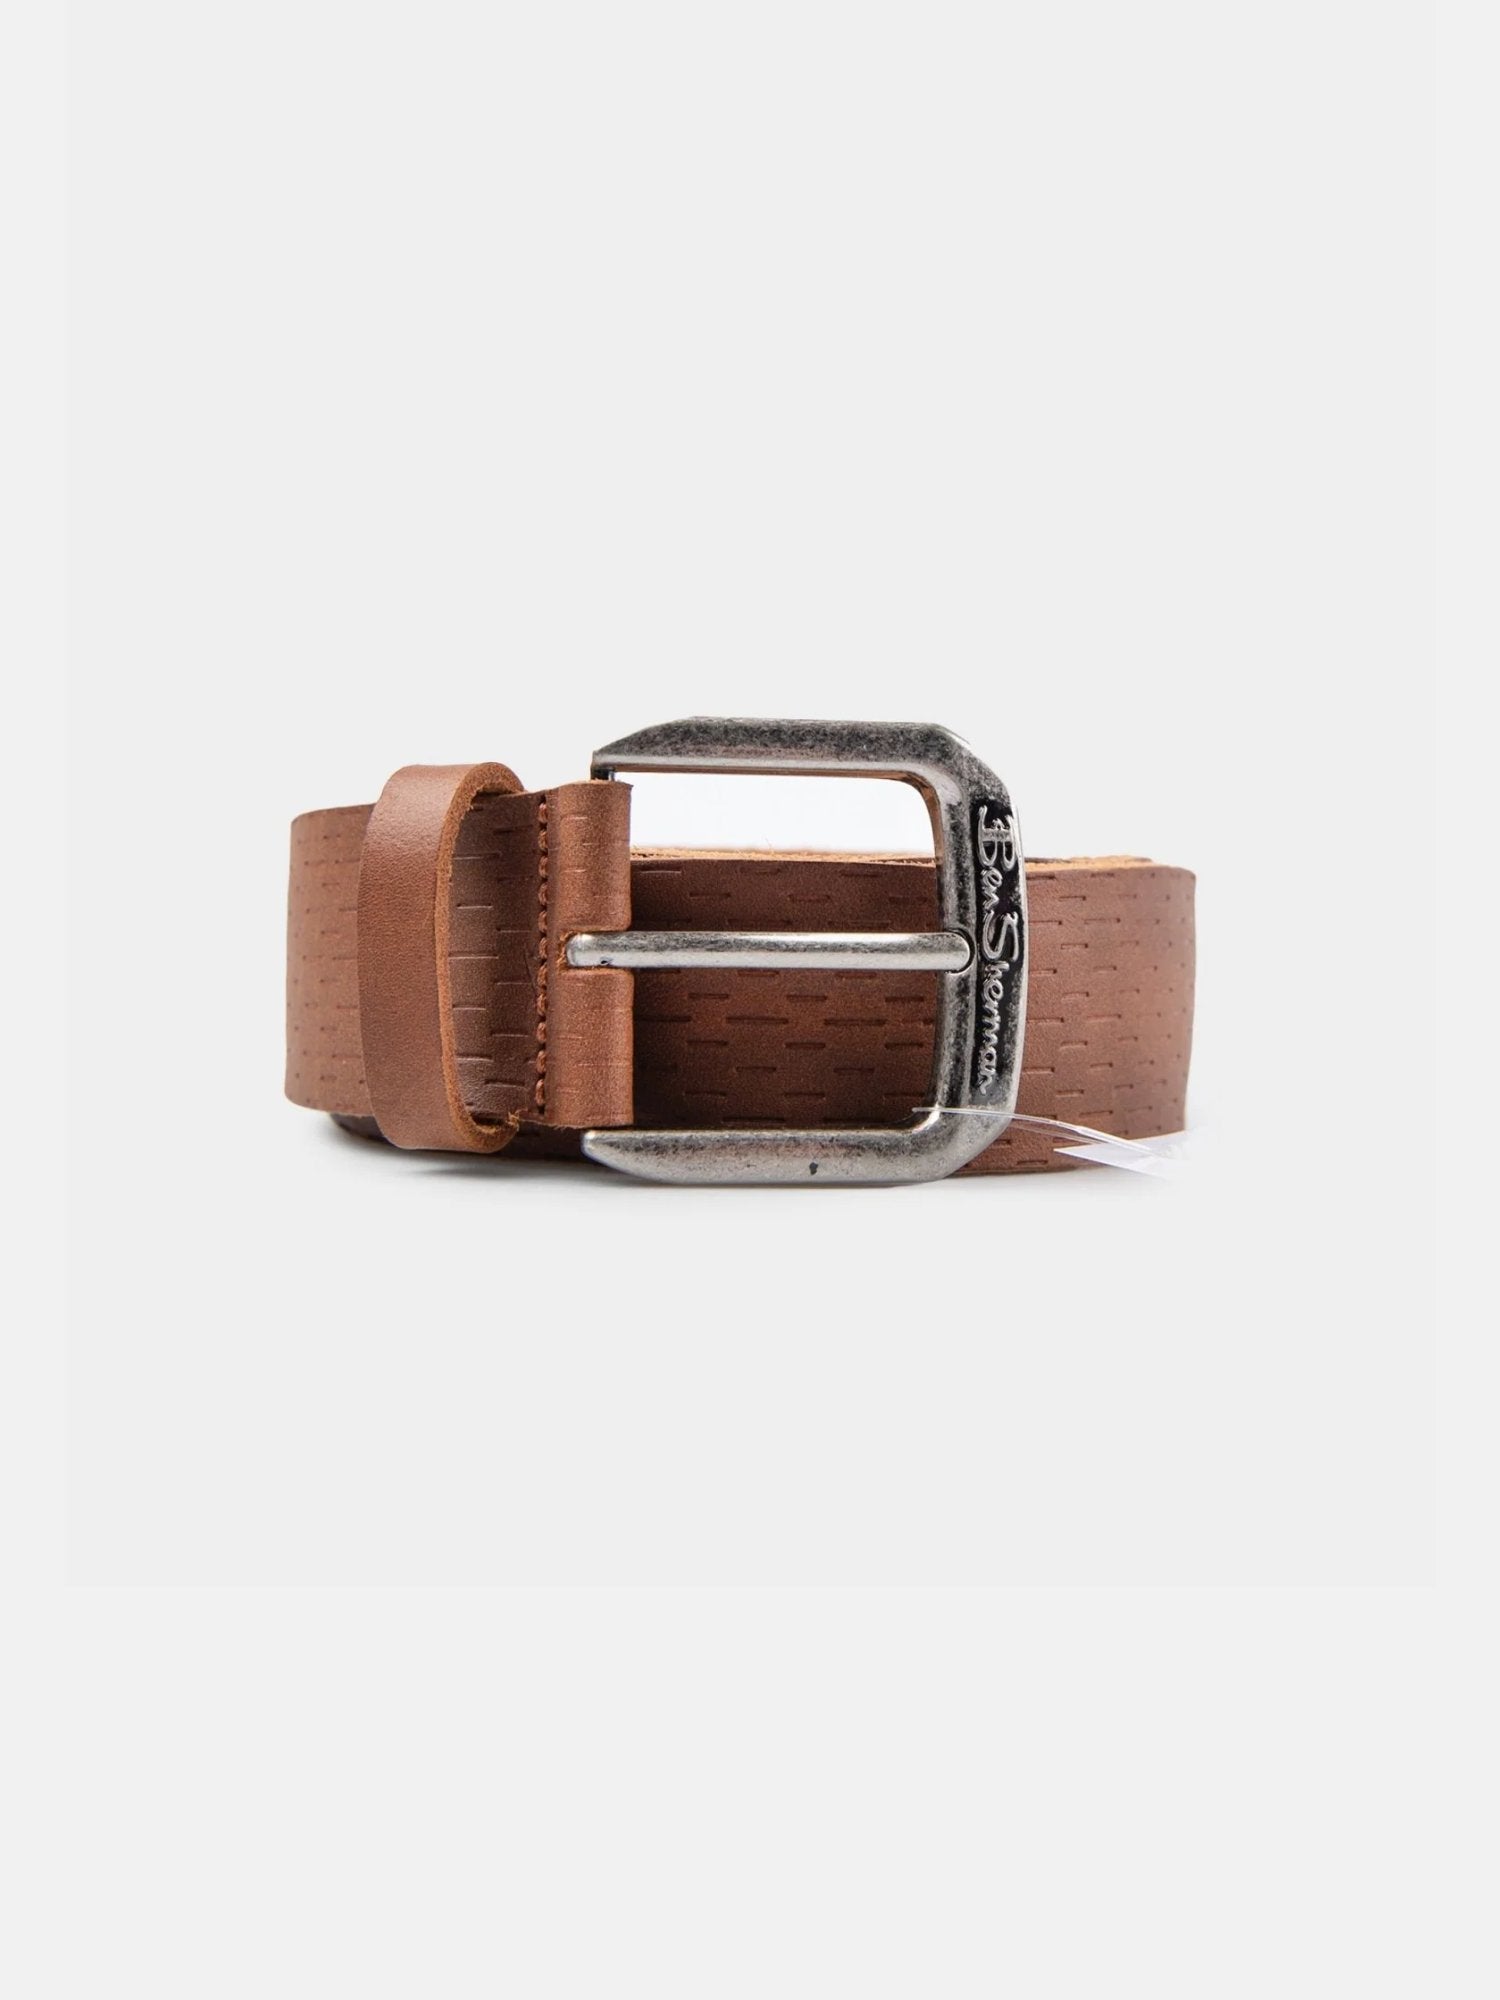 Formal Leather Belt - Tan